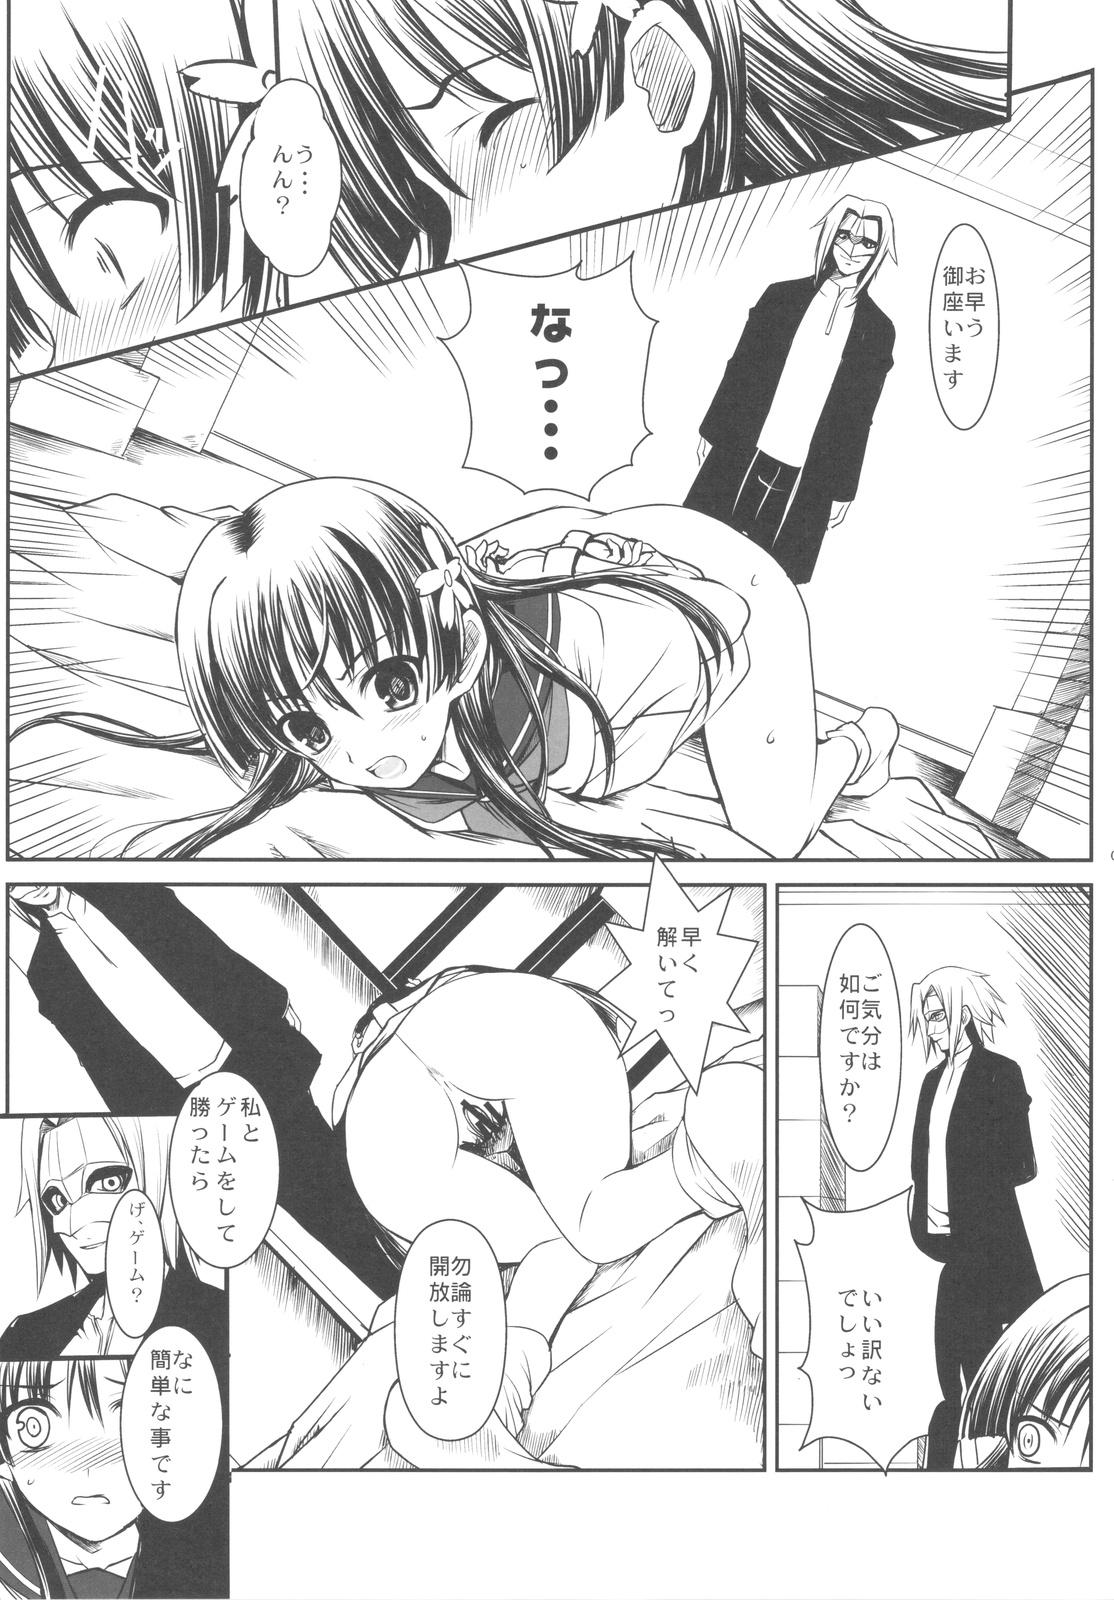 Flagra ERECTLIC THUNDER - Toaru kagaku no railgun Sensual - Page 5